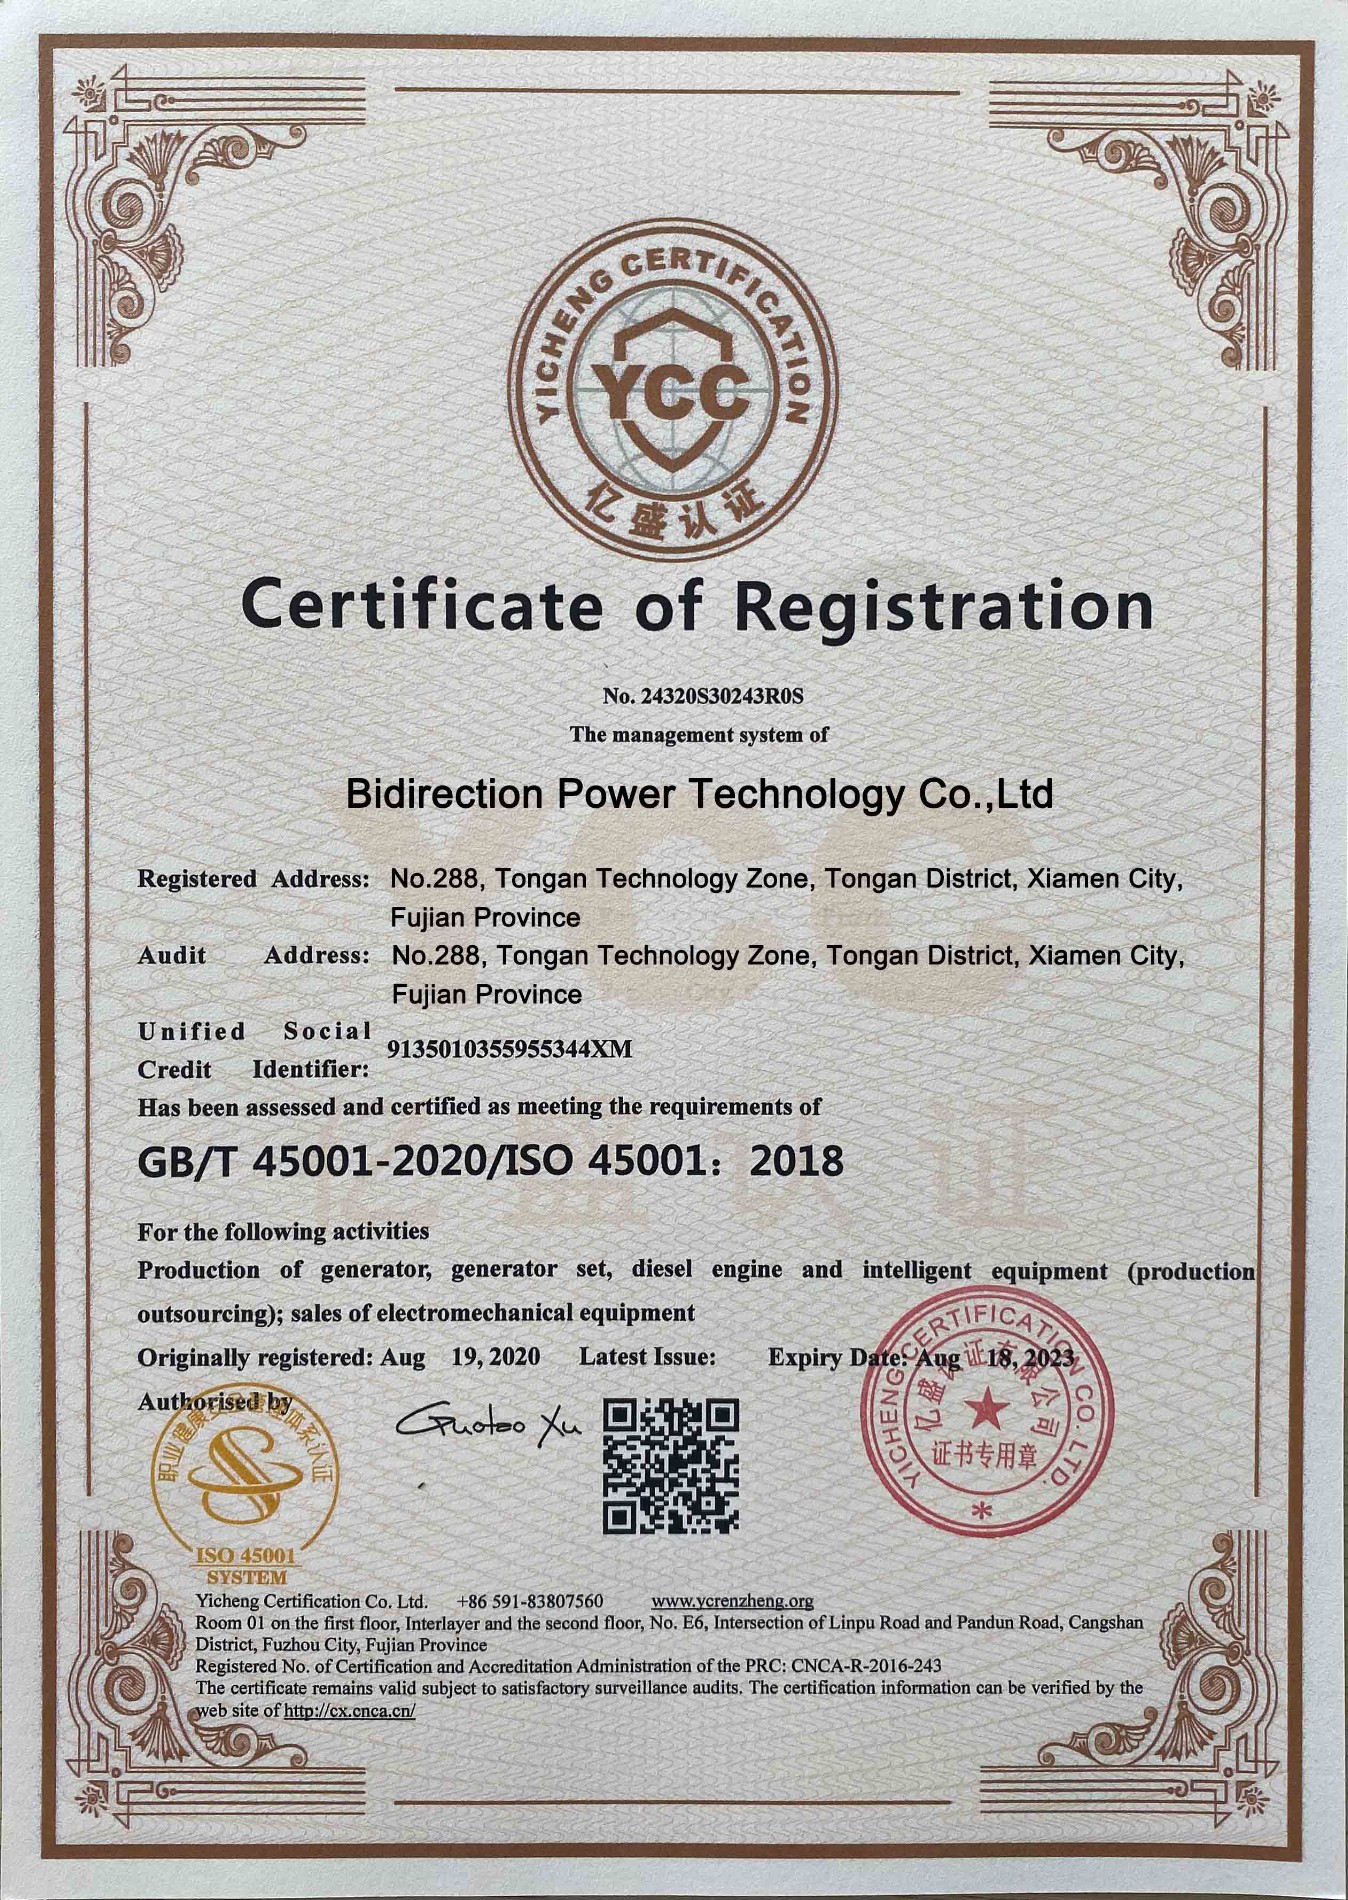 등록 인증서에 의해 승인 된 양방향 전력 기술 GB / T45001-2020 / ISO 45001 : 2018